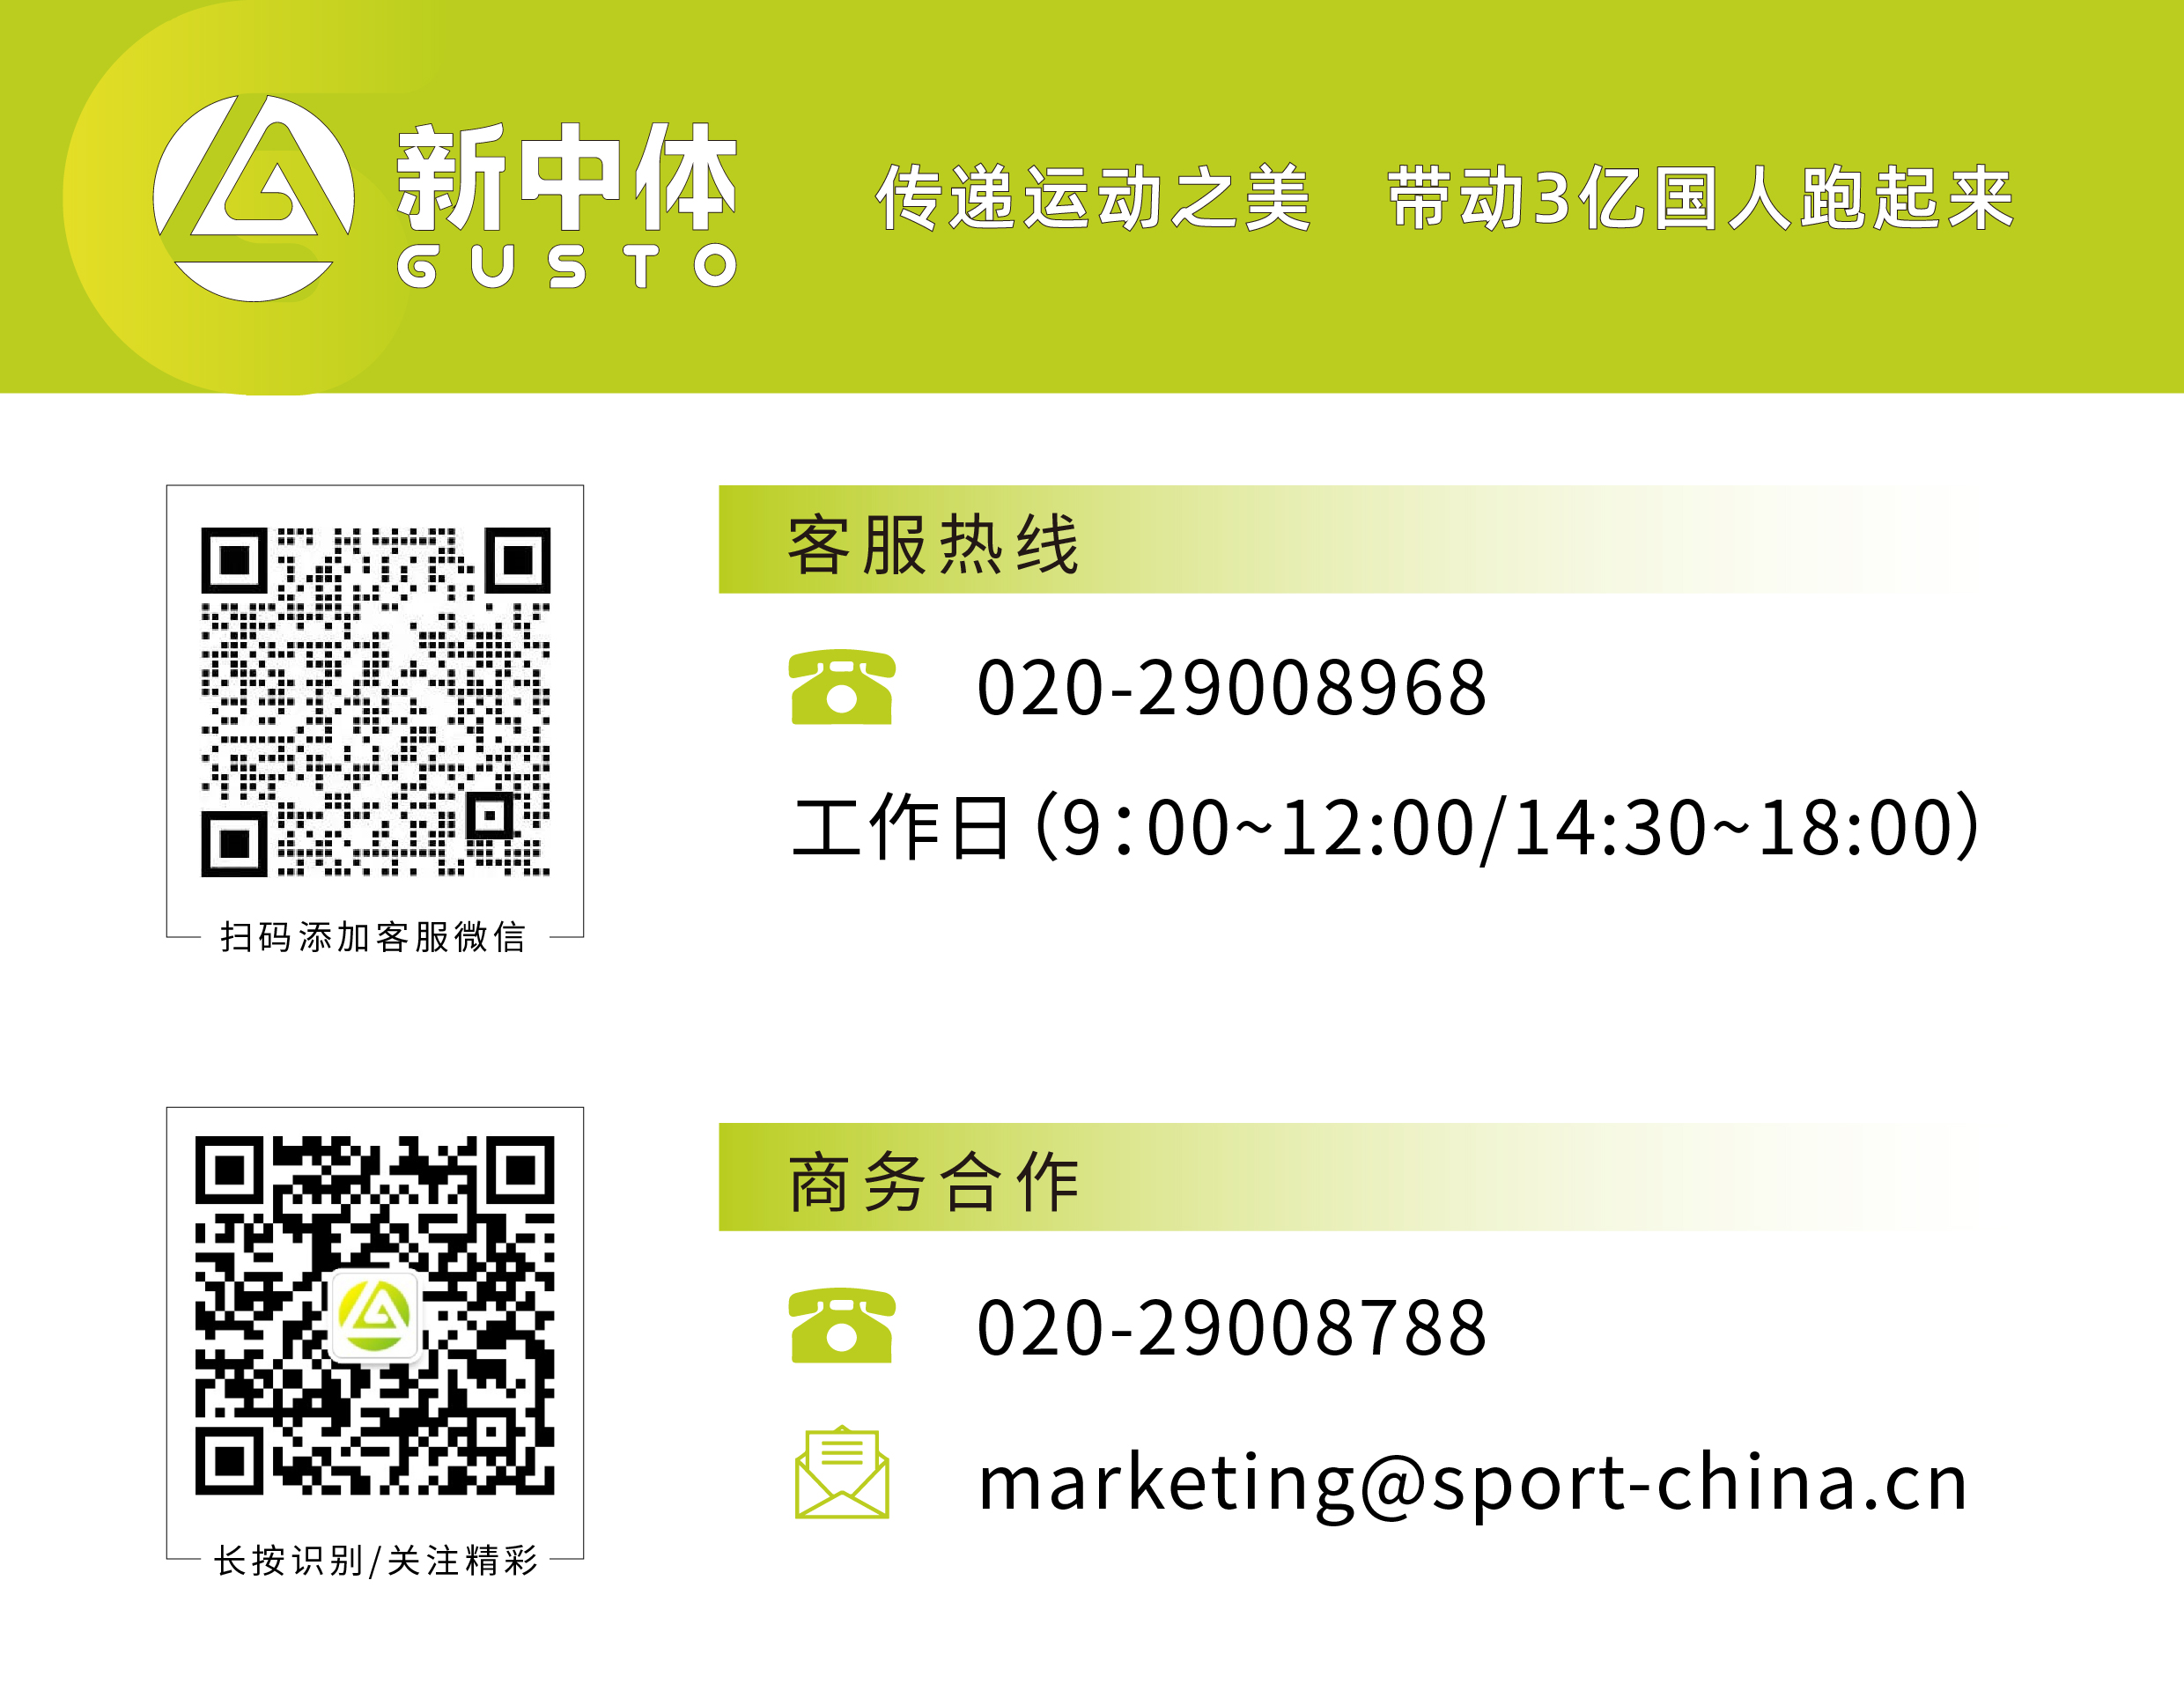 http://img.sport-china.cn/211023176173dc68106ca.jpeg